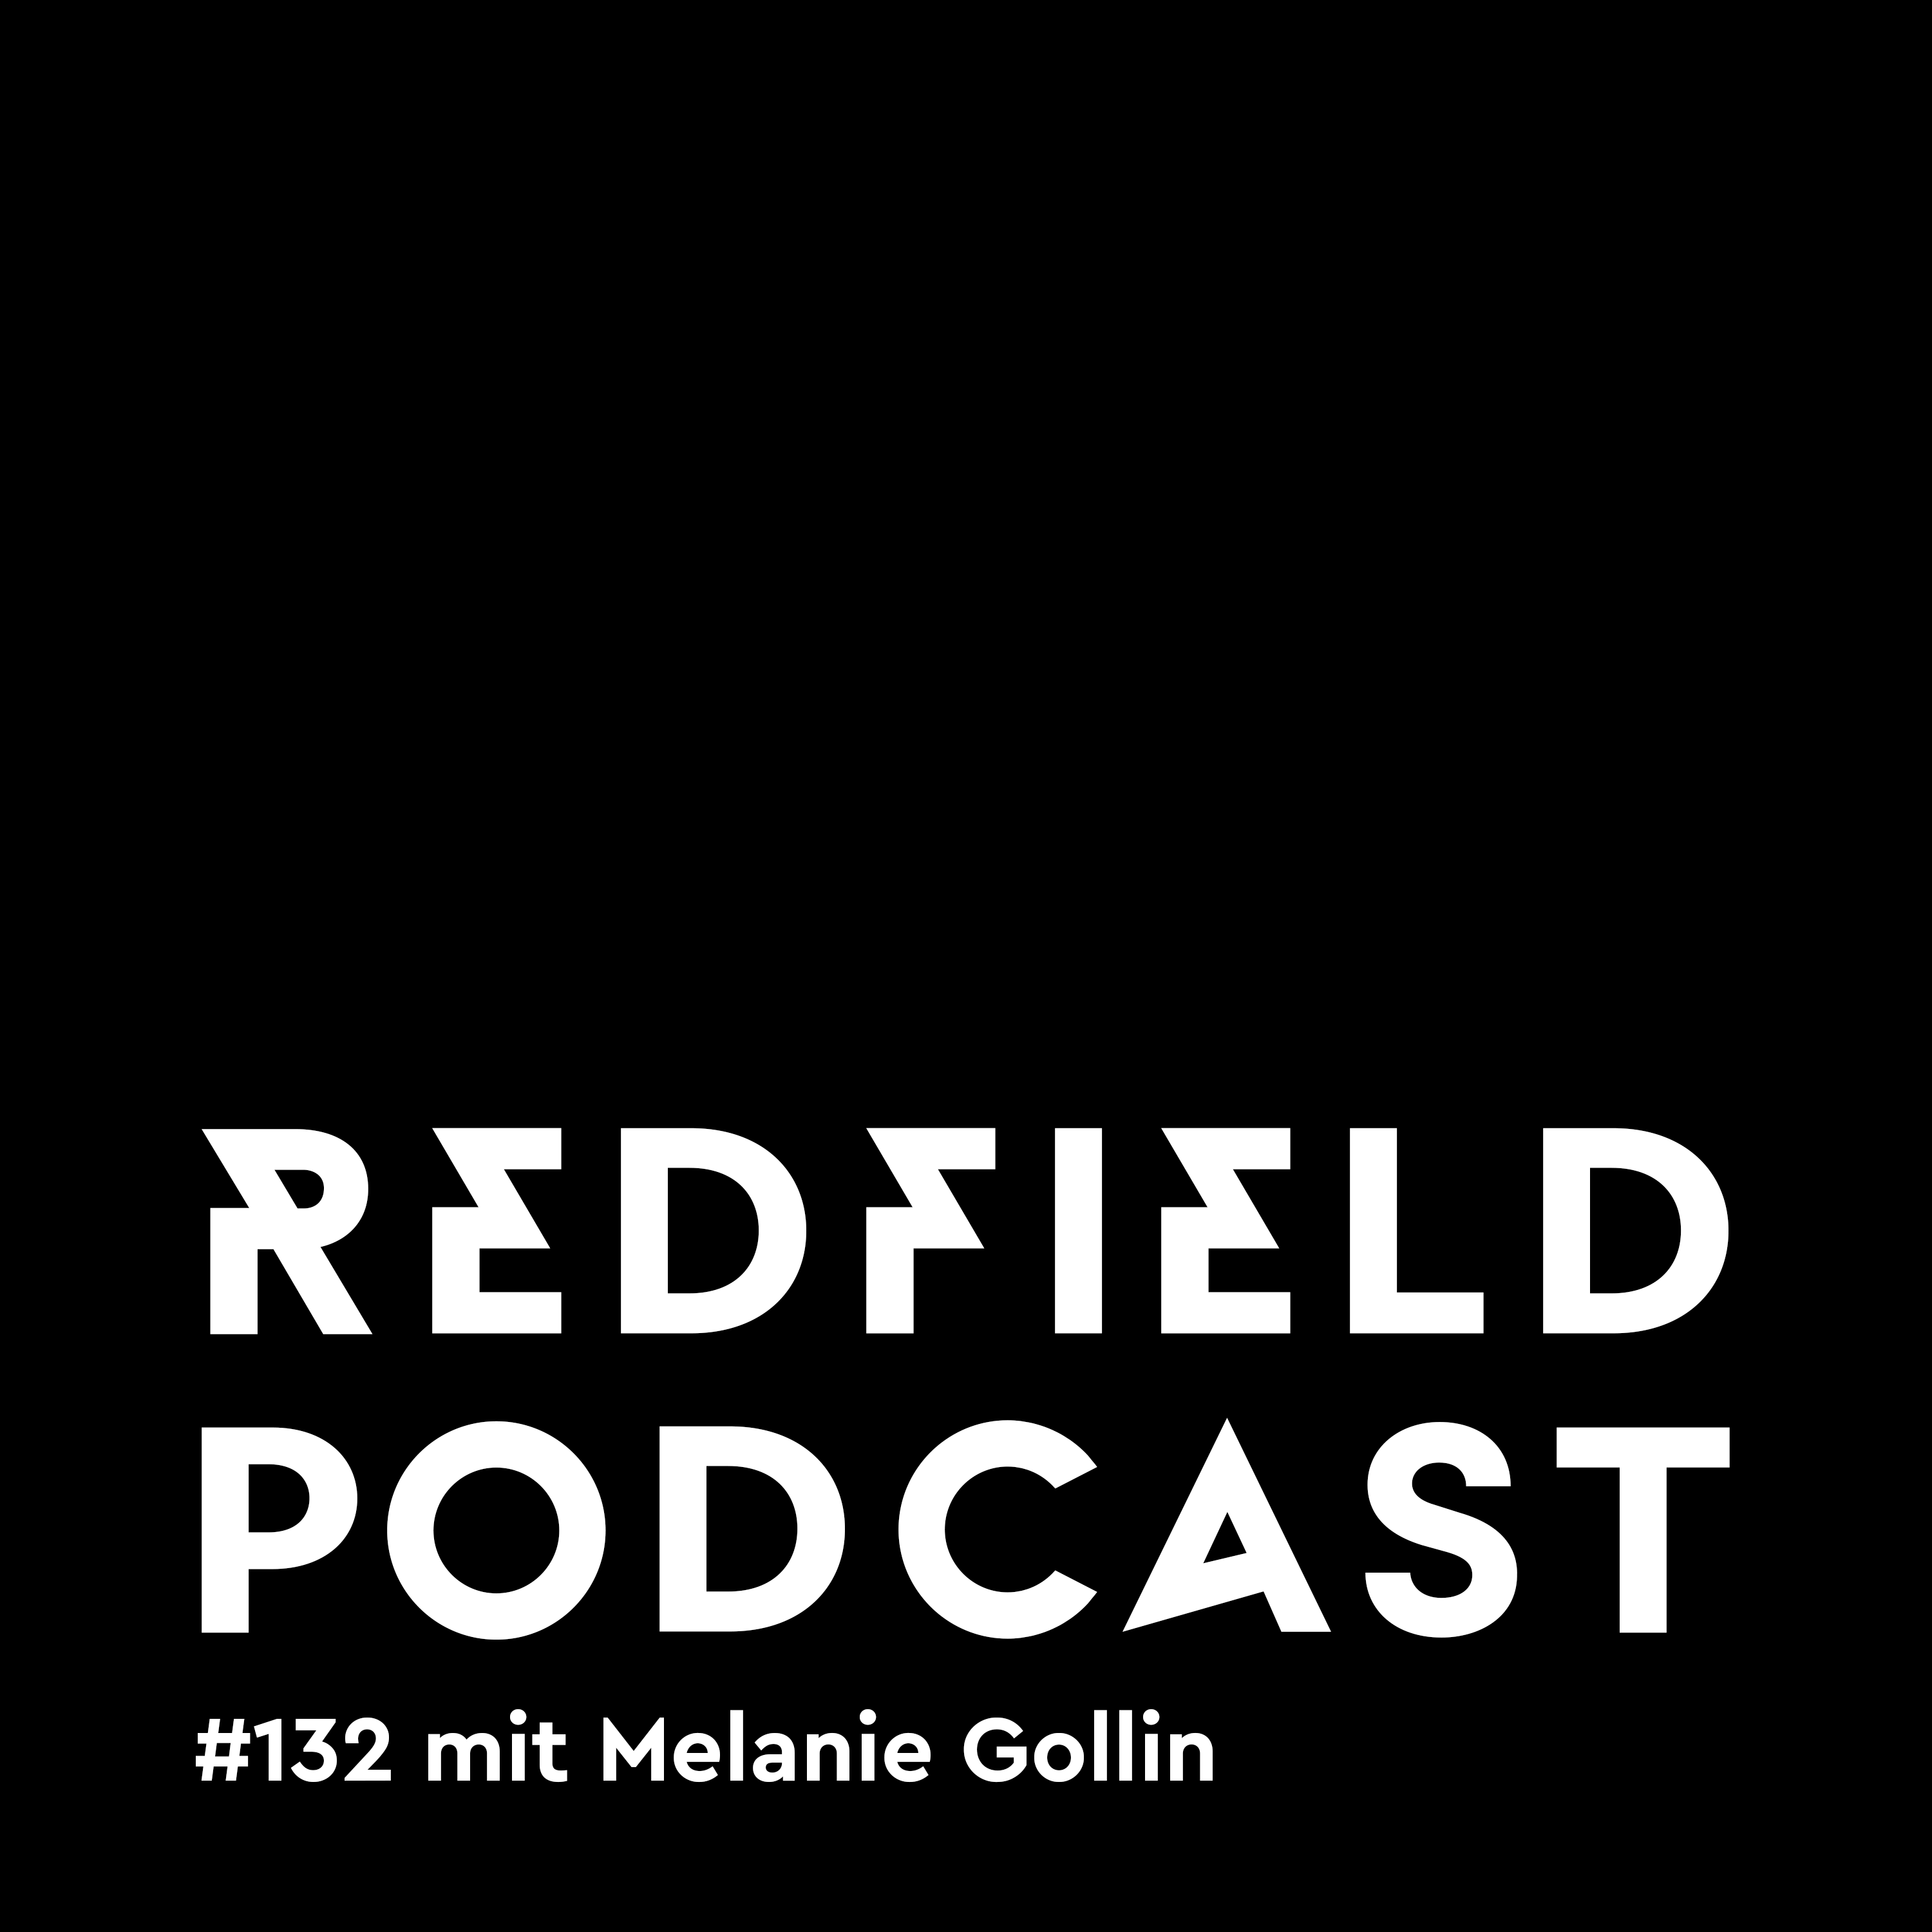 R#132 mit Melanie Gollin, Musikjournalistin